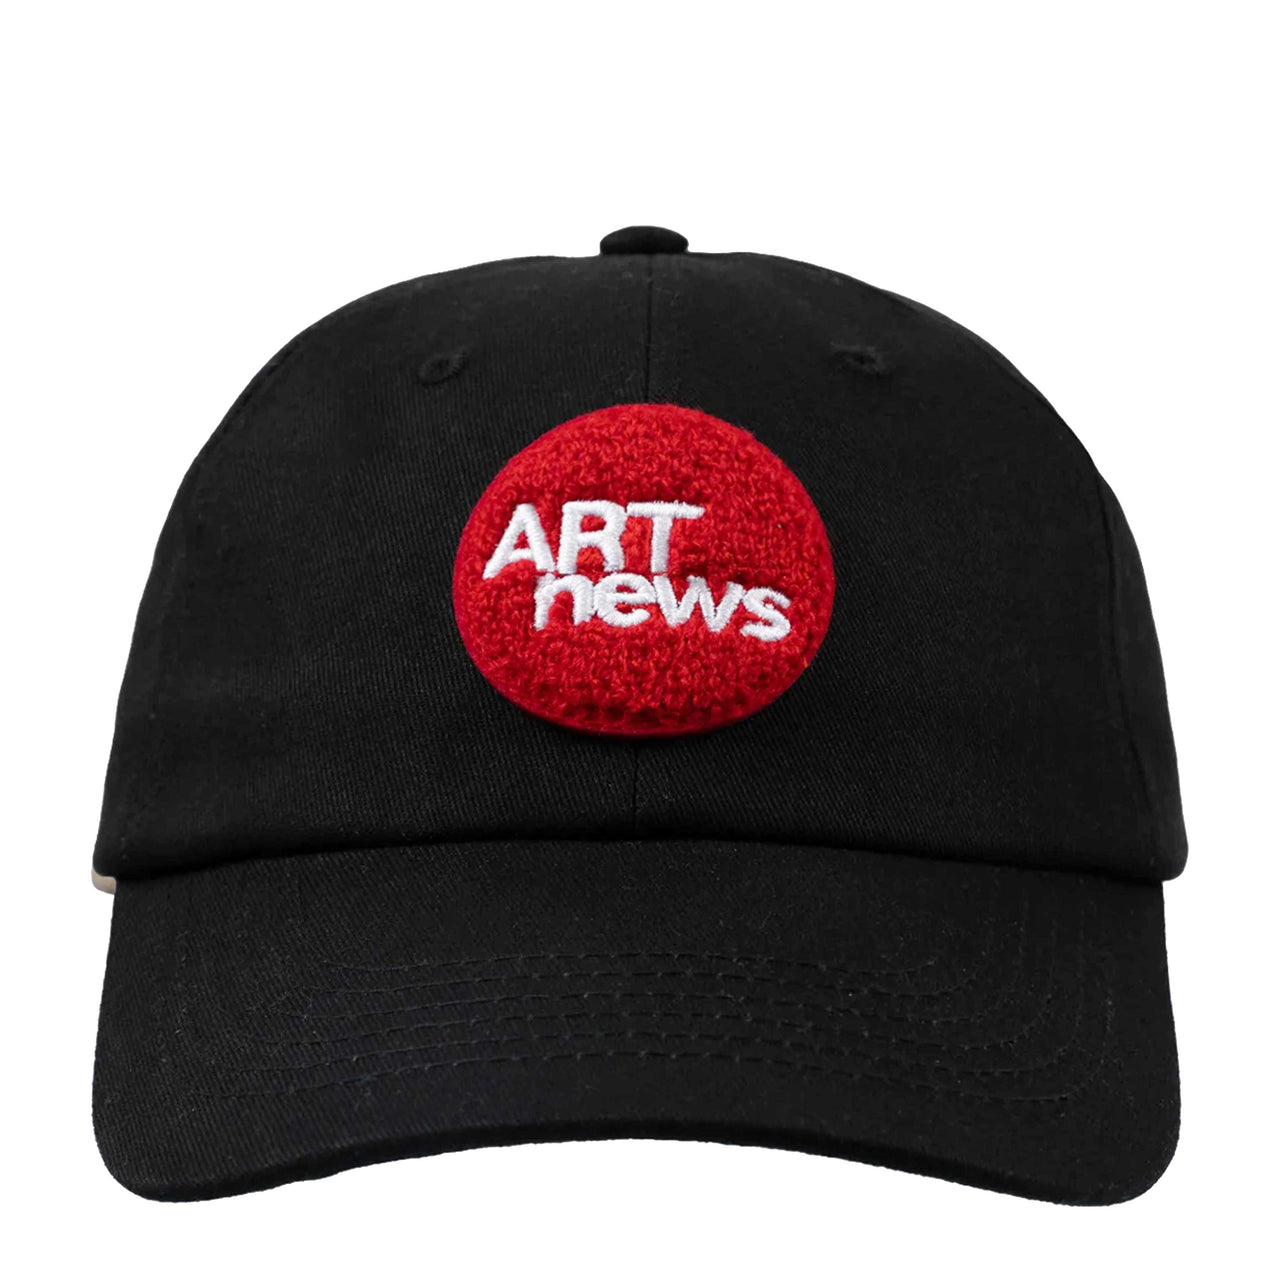 ART NEWS CAP / ARTNEWS